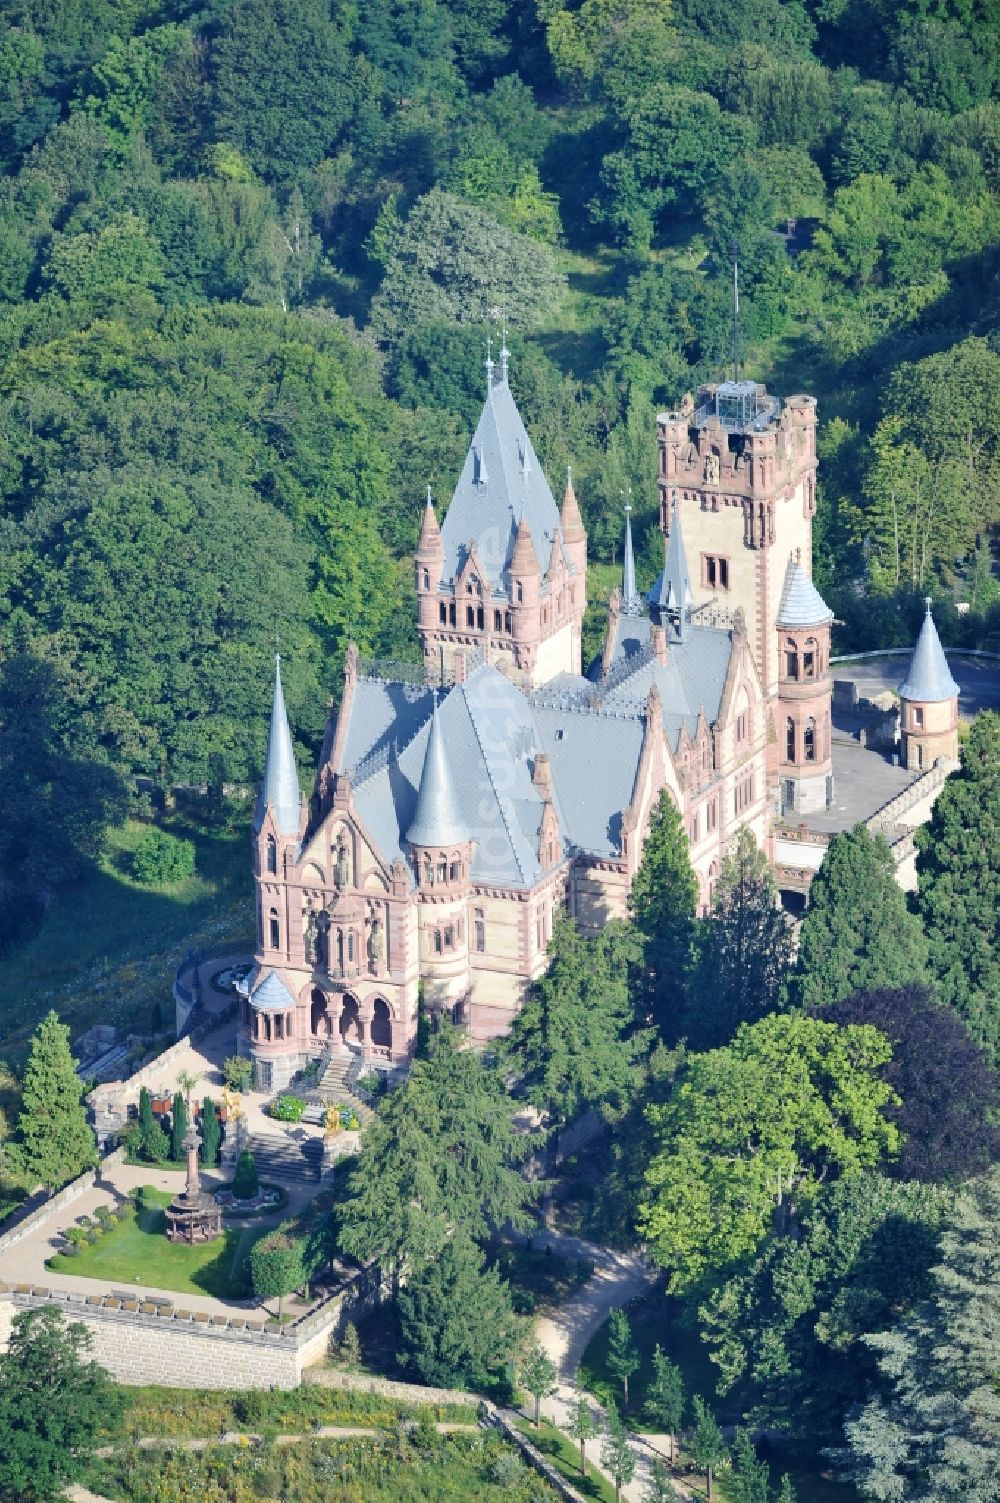 Luftbild Königswinter - Blick auf das Schloss Drachenburg in Königswinter im Bundesland Nordrhein-Westfalen